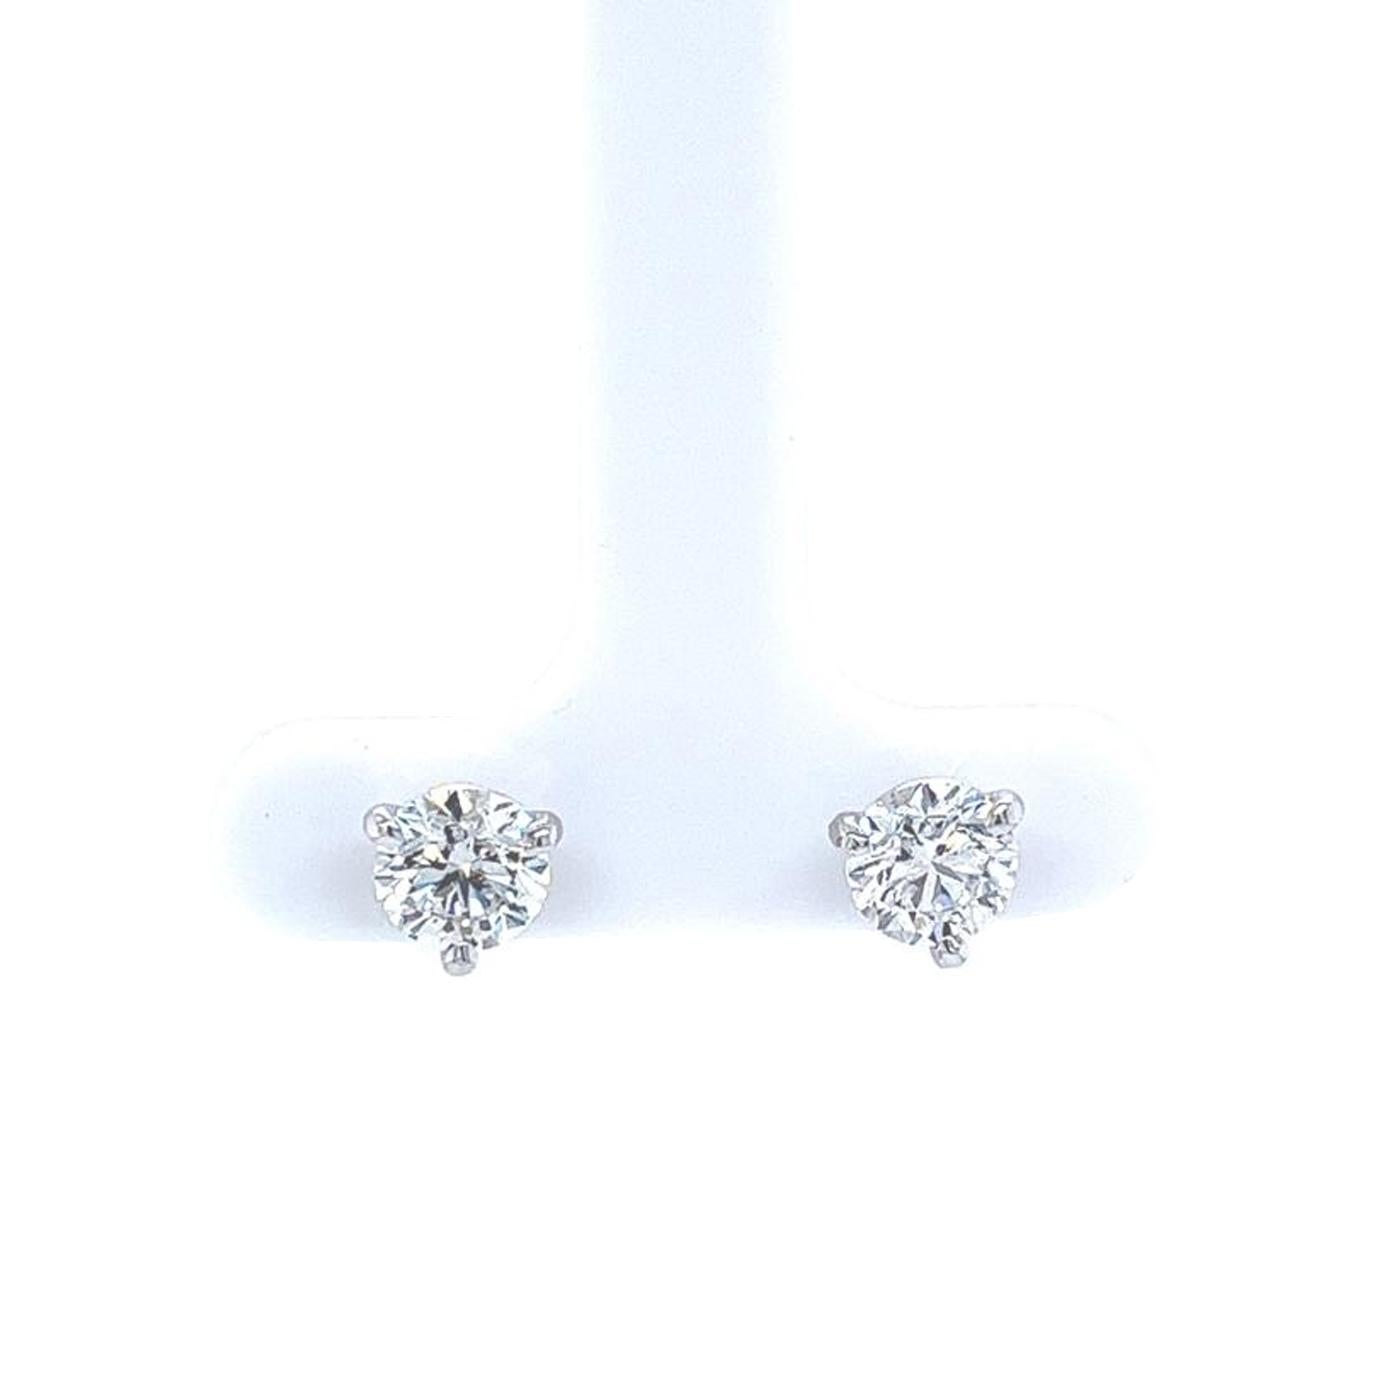 Diese Diamant-Ohrstecker sind mit zwei runden Diamanten im Brillantschliff besetzt, die zusammen 1,80 ct ausmachen. Sie sind in 3-Punkt-Martini-Halterungen montiert. Der erste Diamant wiegt 0,90 ct und wird vom GIA als sehr guter Schliff, Farbe E